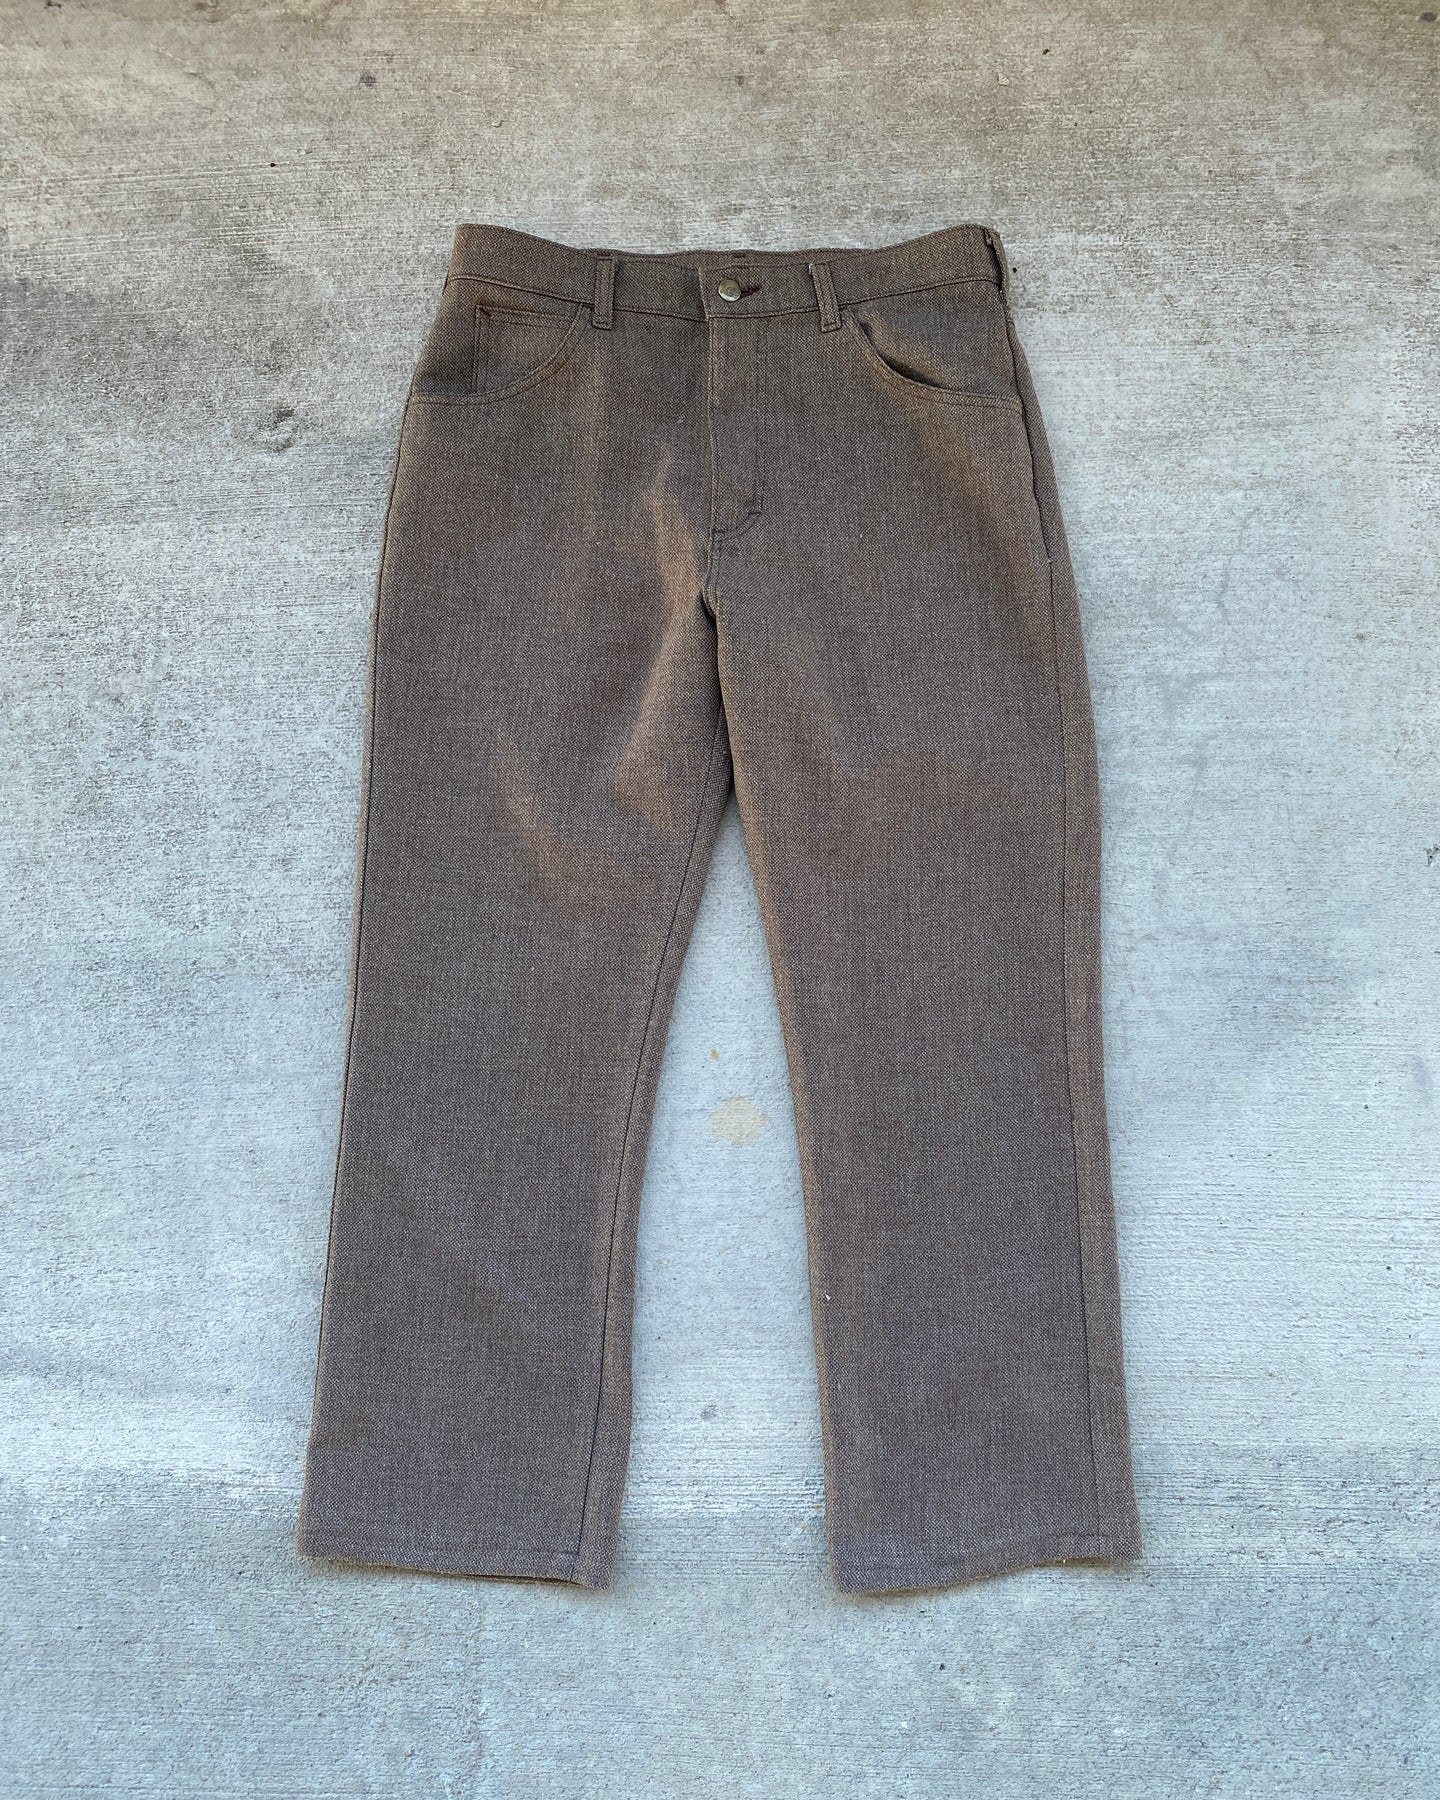 1970s Lee Dress Jeans - Size 31 x 27